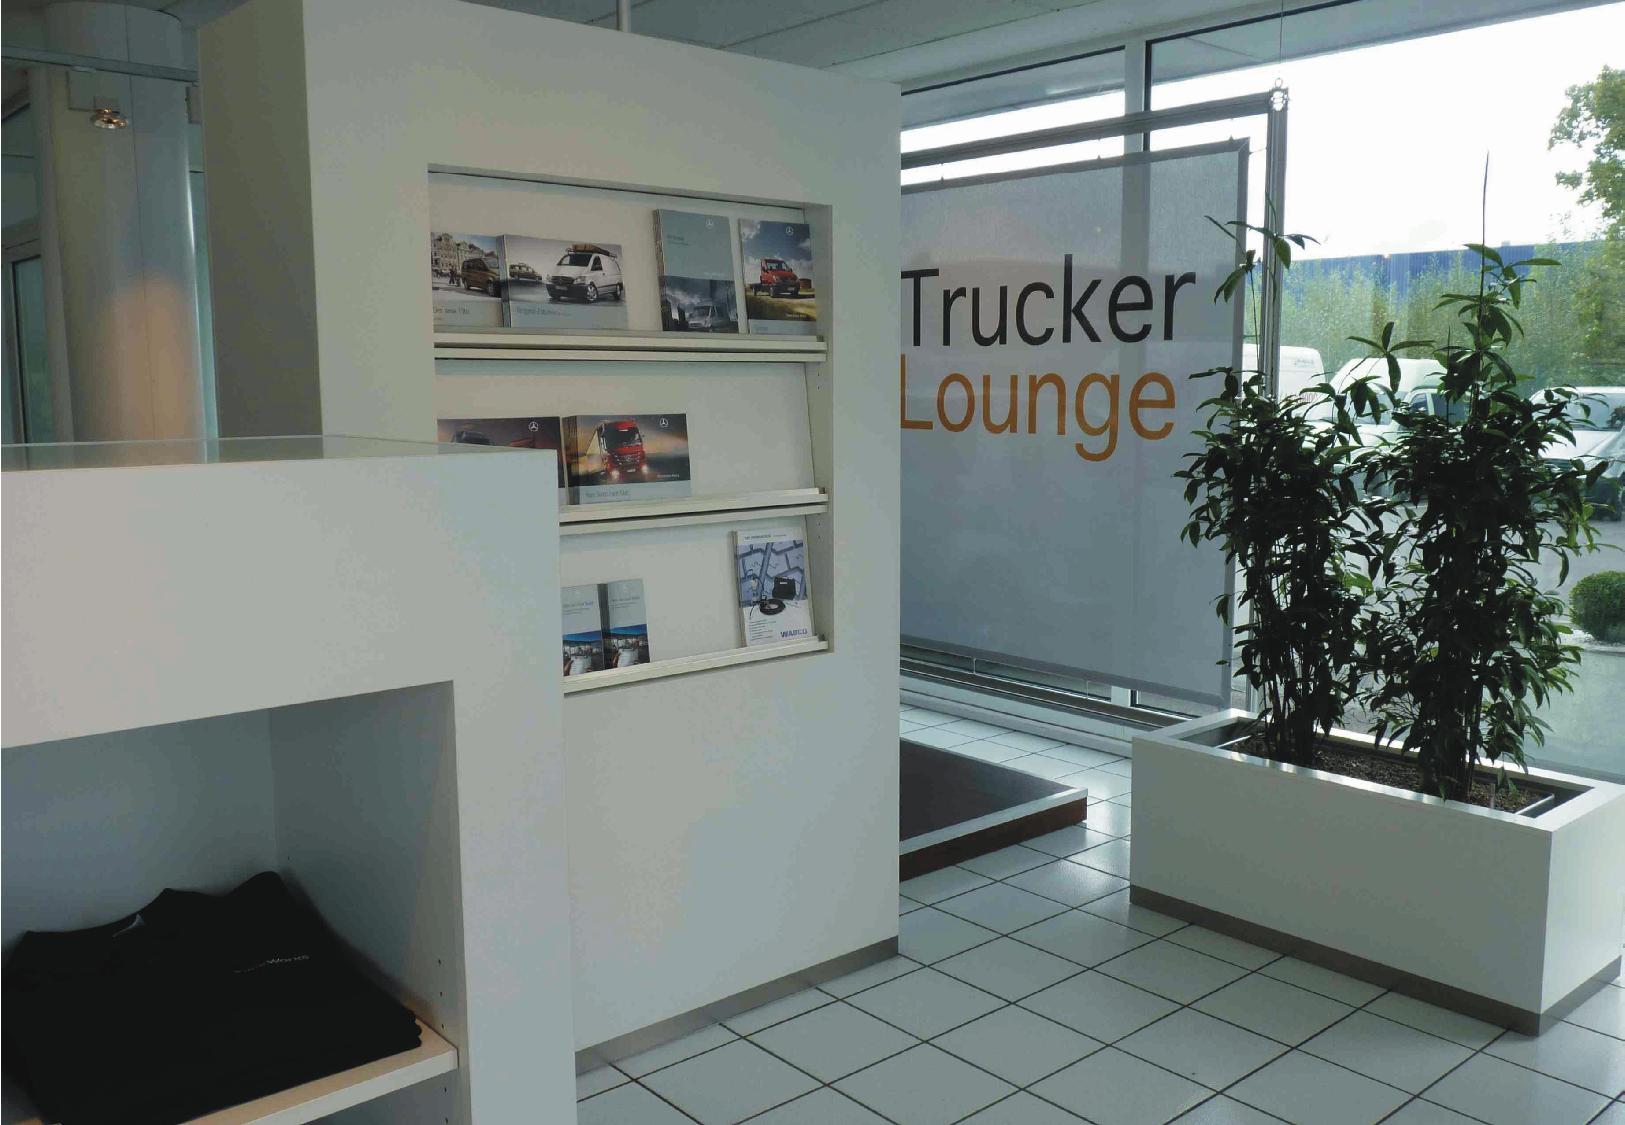 03_Trucker Lounge.jpg